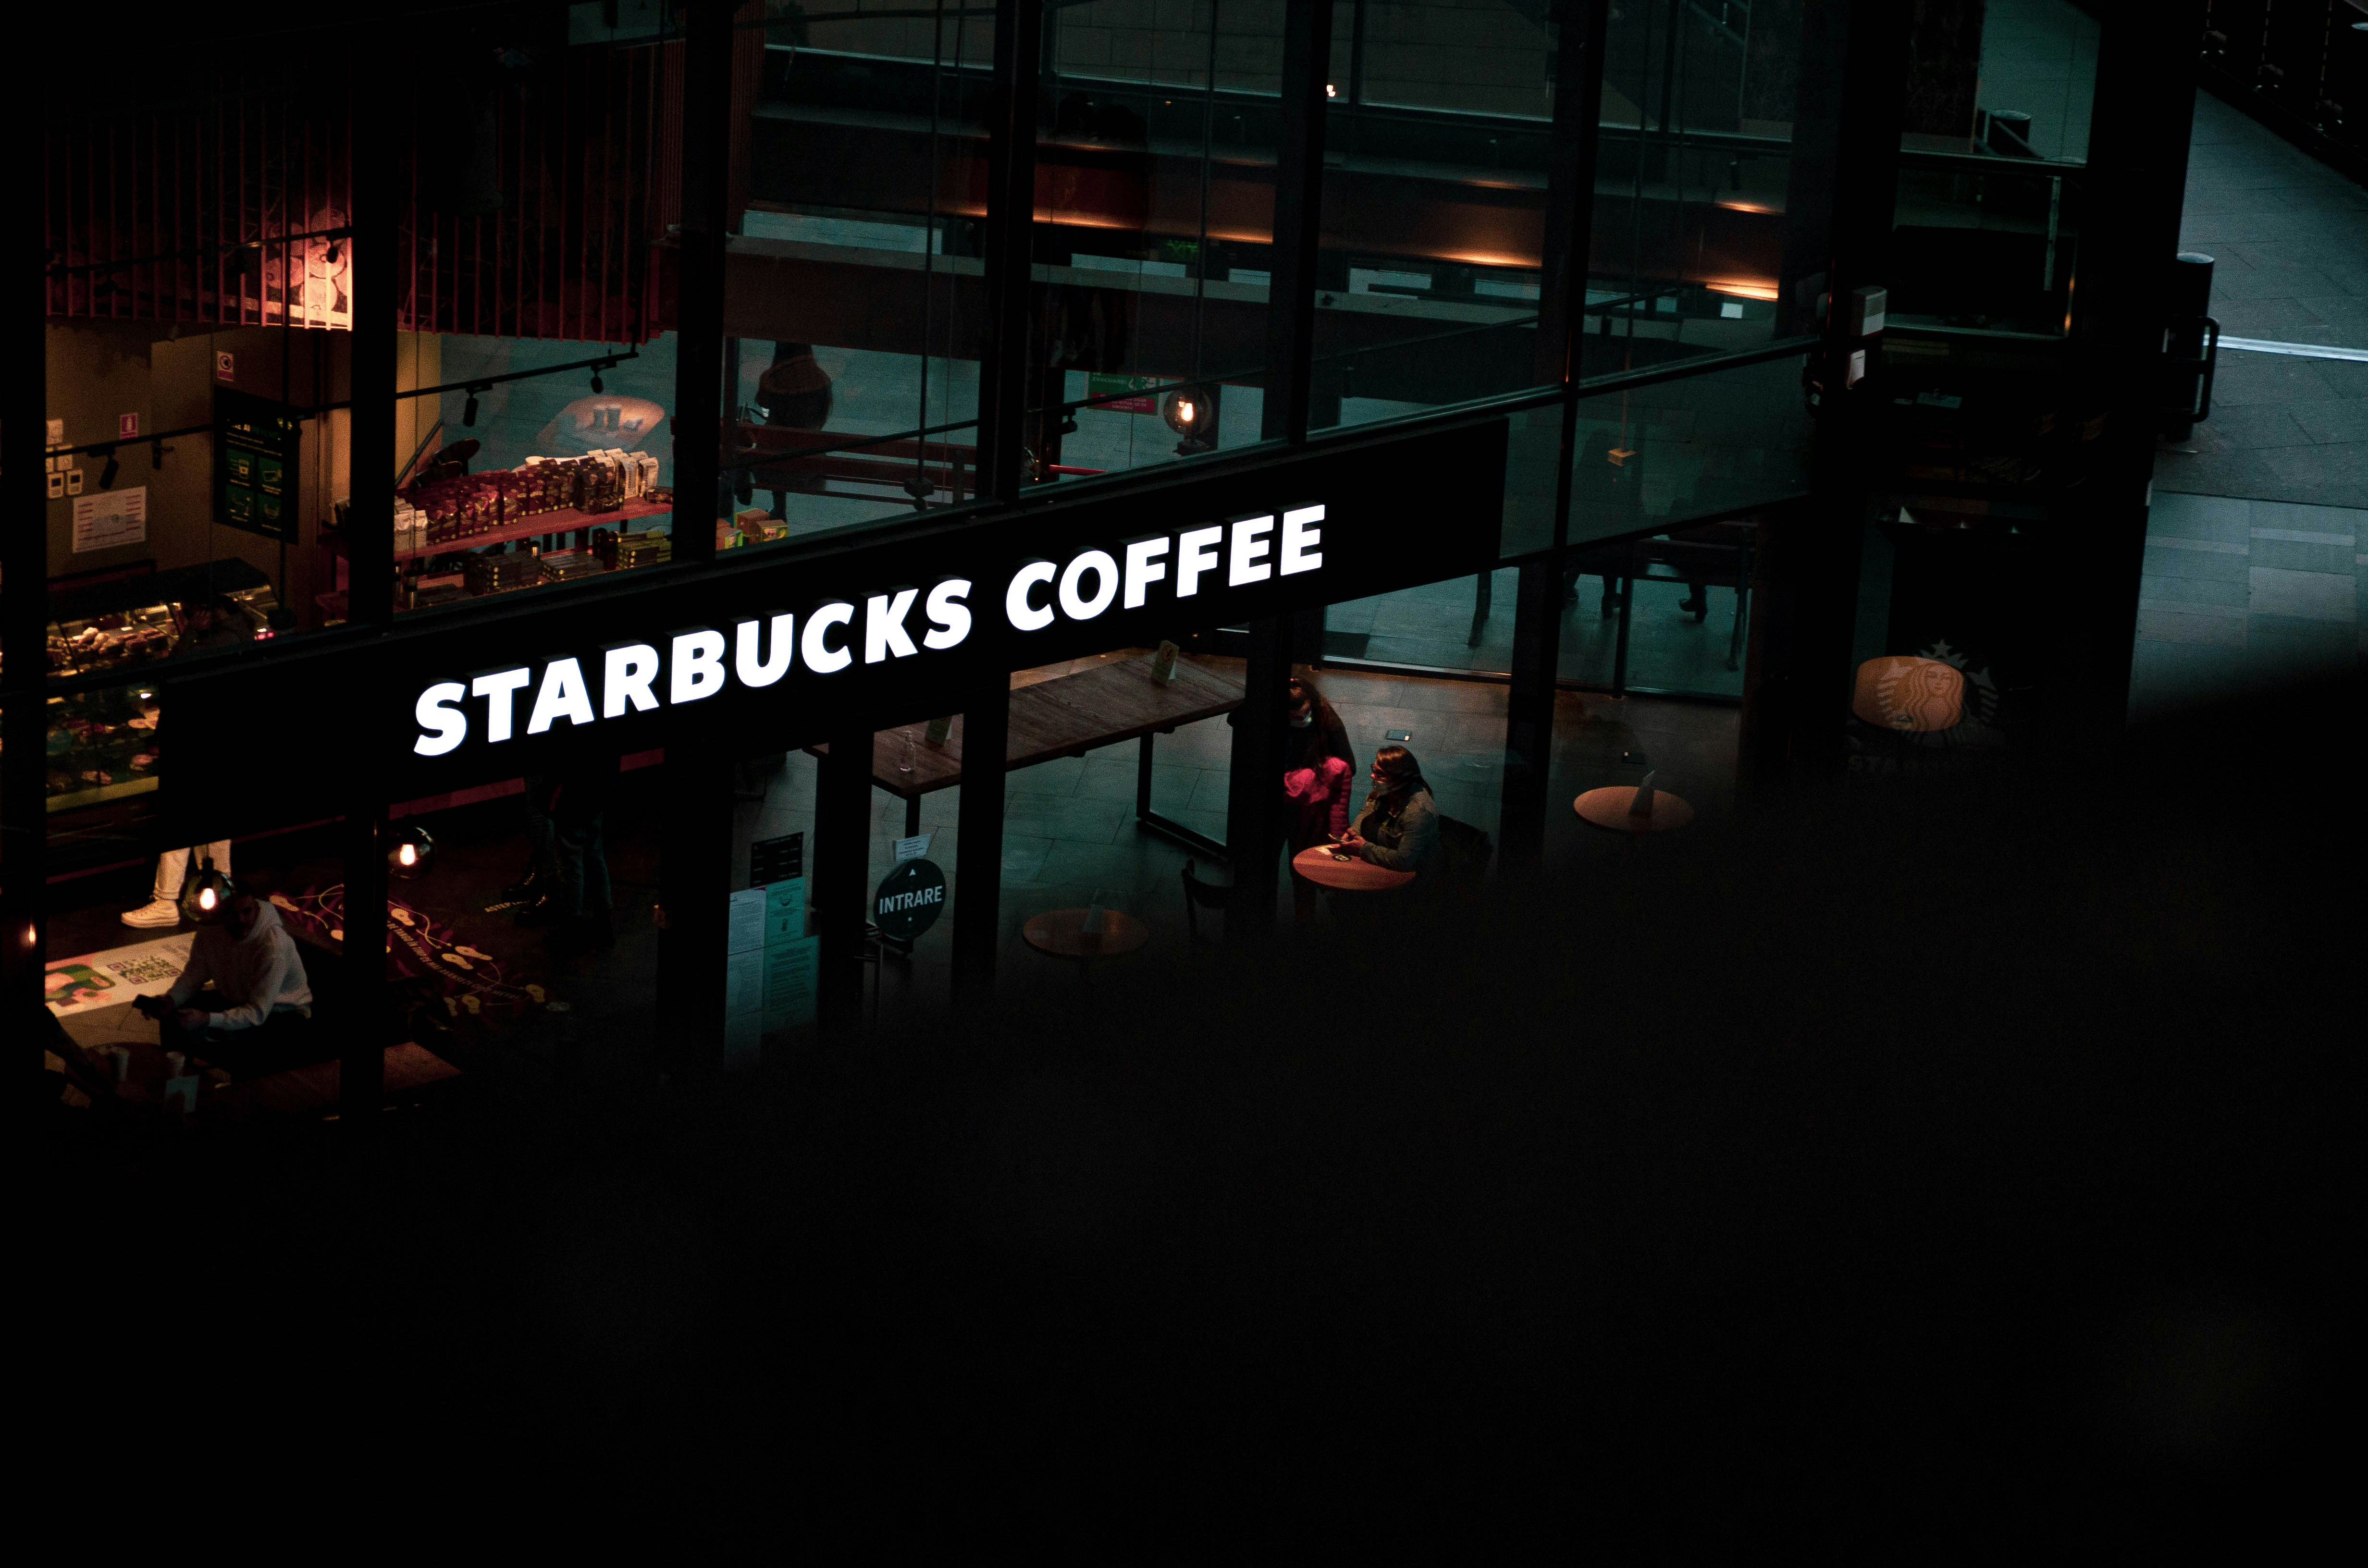 Do US Muslims still favor Starbucks over rivals?